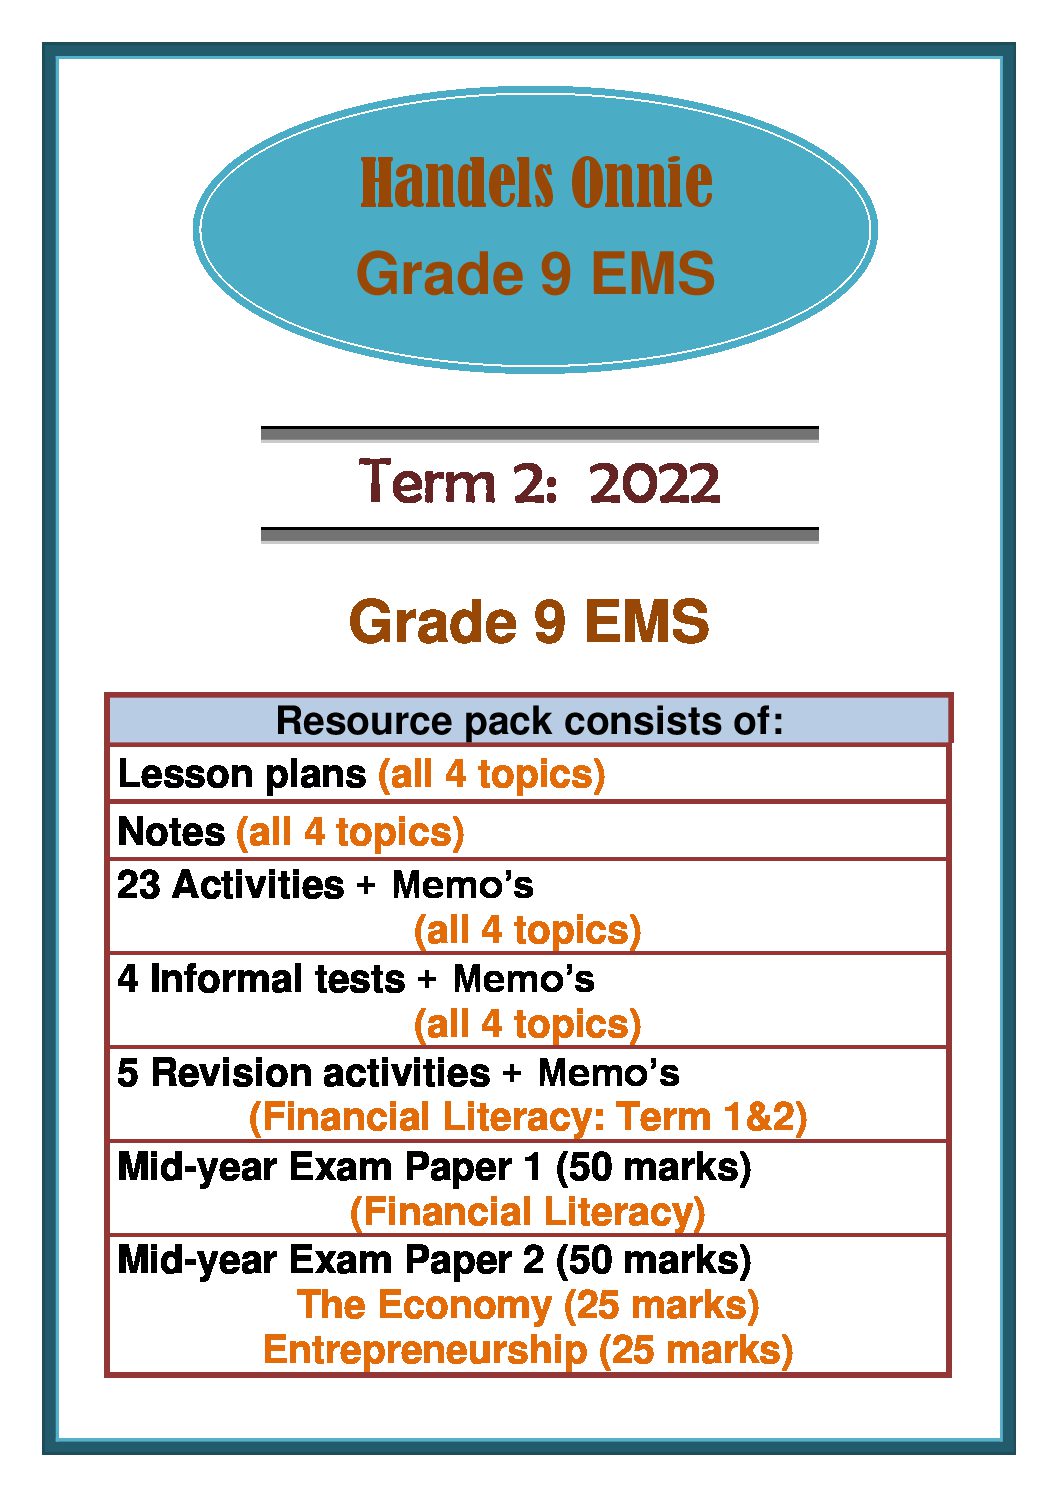 ems grade 9 assignment term 2